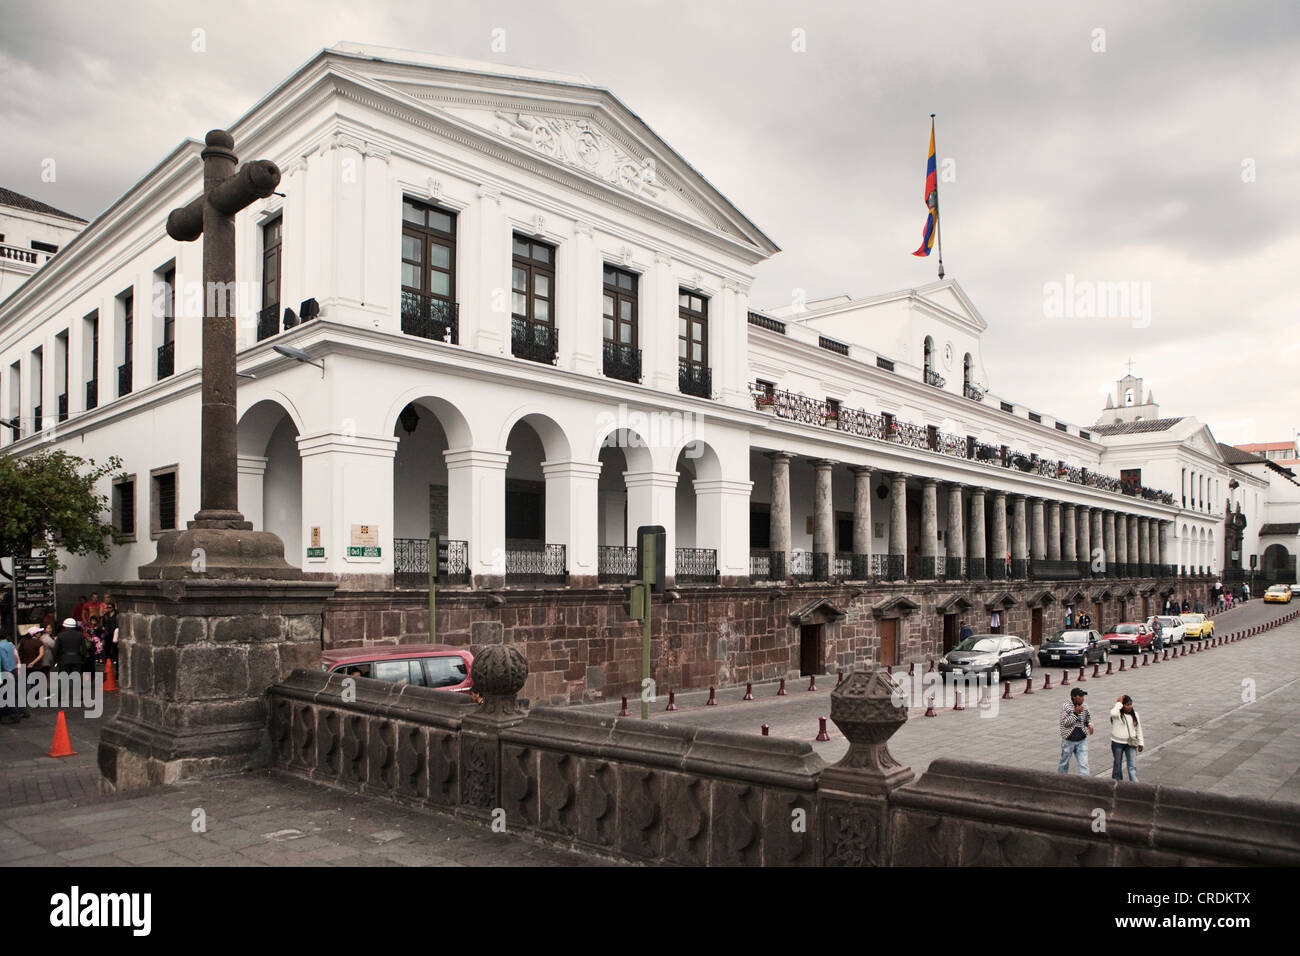 Palacio de Carondelet, le siège du gouvernement équatorien, dans la Plaza Grande dans le centre-ville historique de Quito, Équateur Banque D'Images